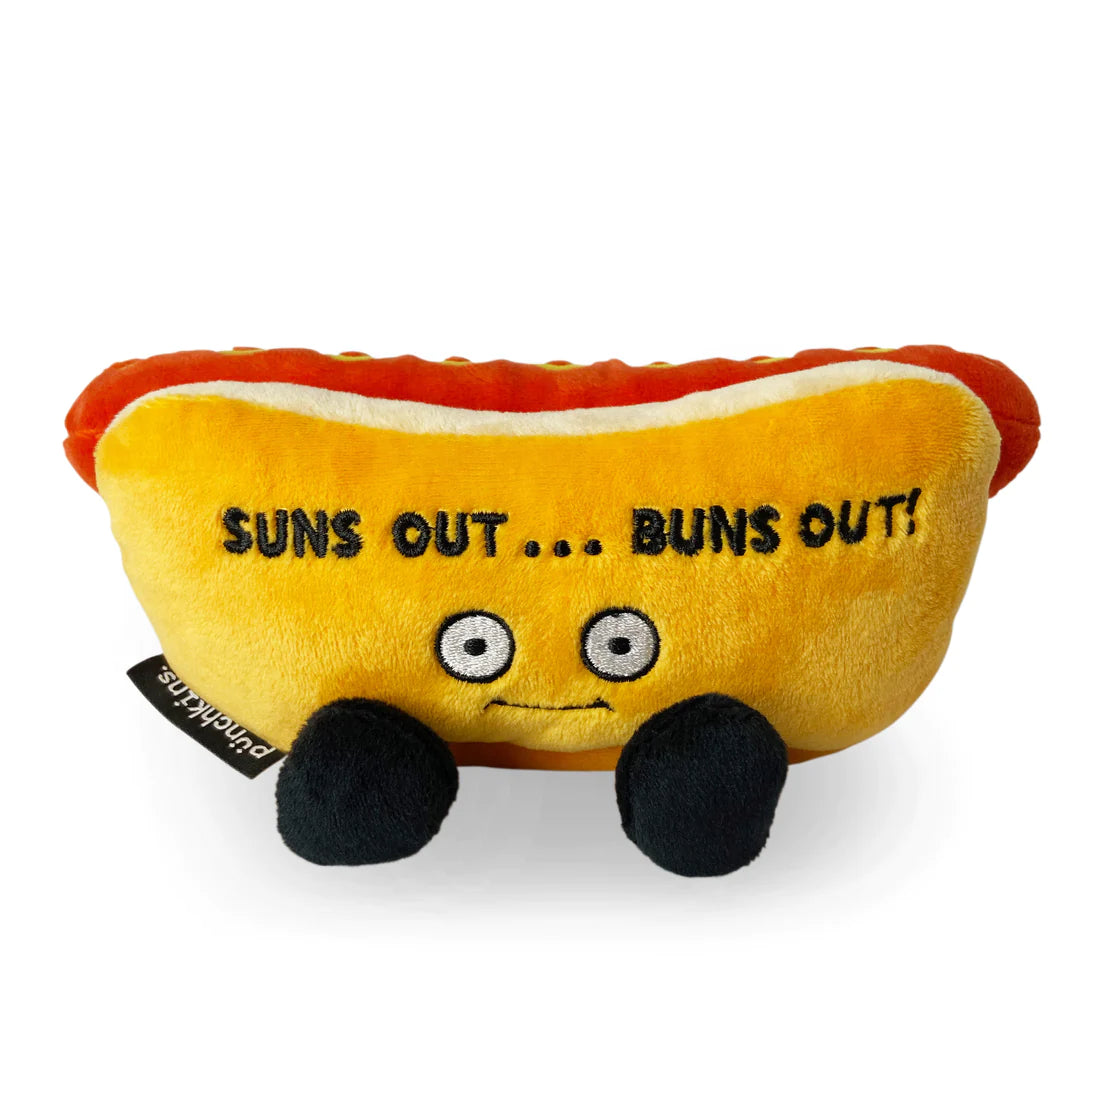 "Suns out, buns out” Hotdog  Plush - Sensory Circle